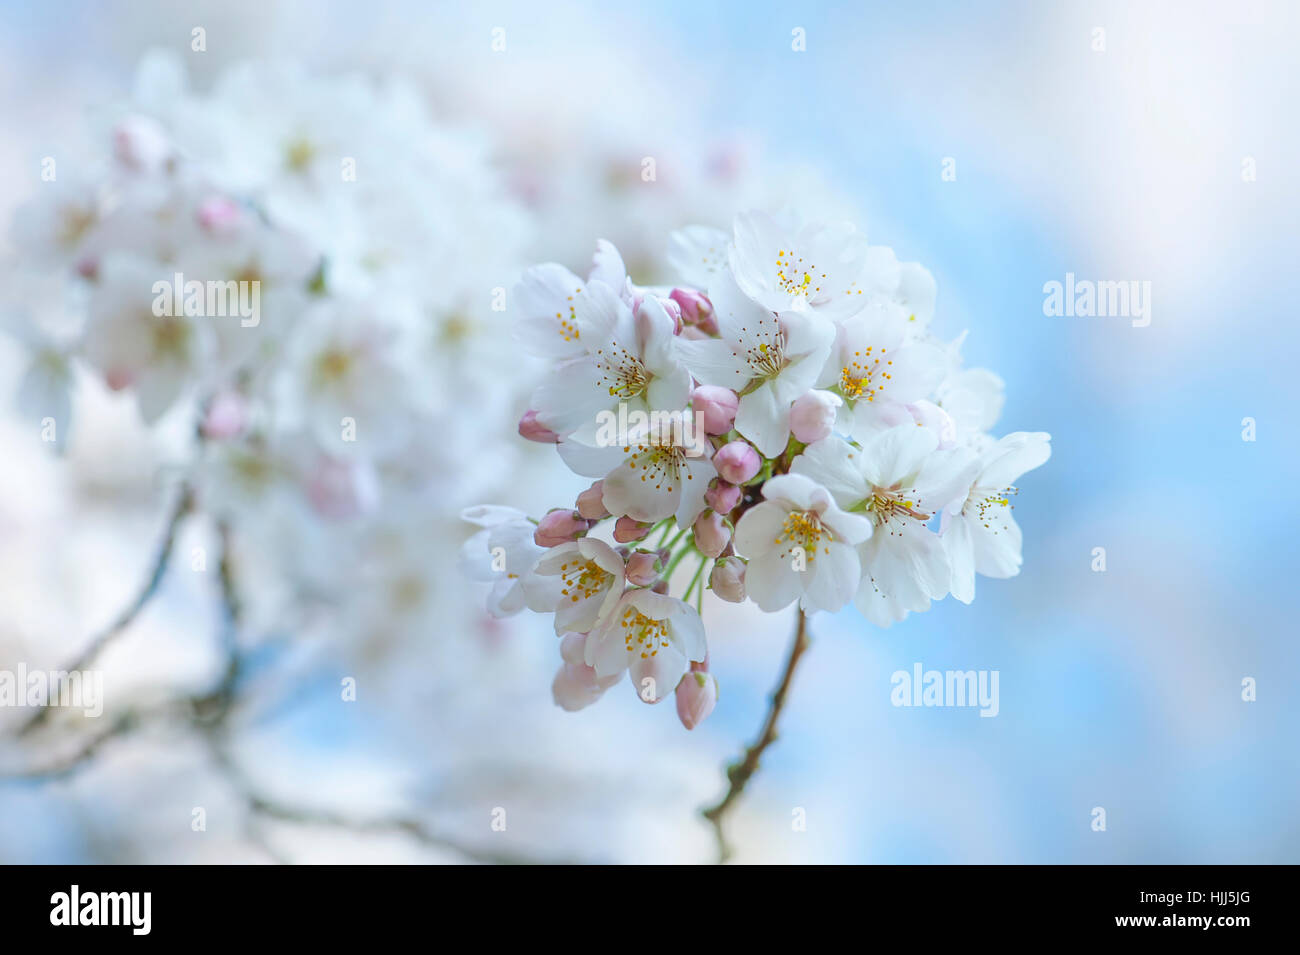 Image en gros plan de la délicate fleur de printemps blanc de l'arbre de cerise Yoshino, les images prises à l'encontre d'un ciel bleu. Banque D'Images